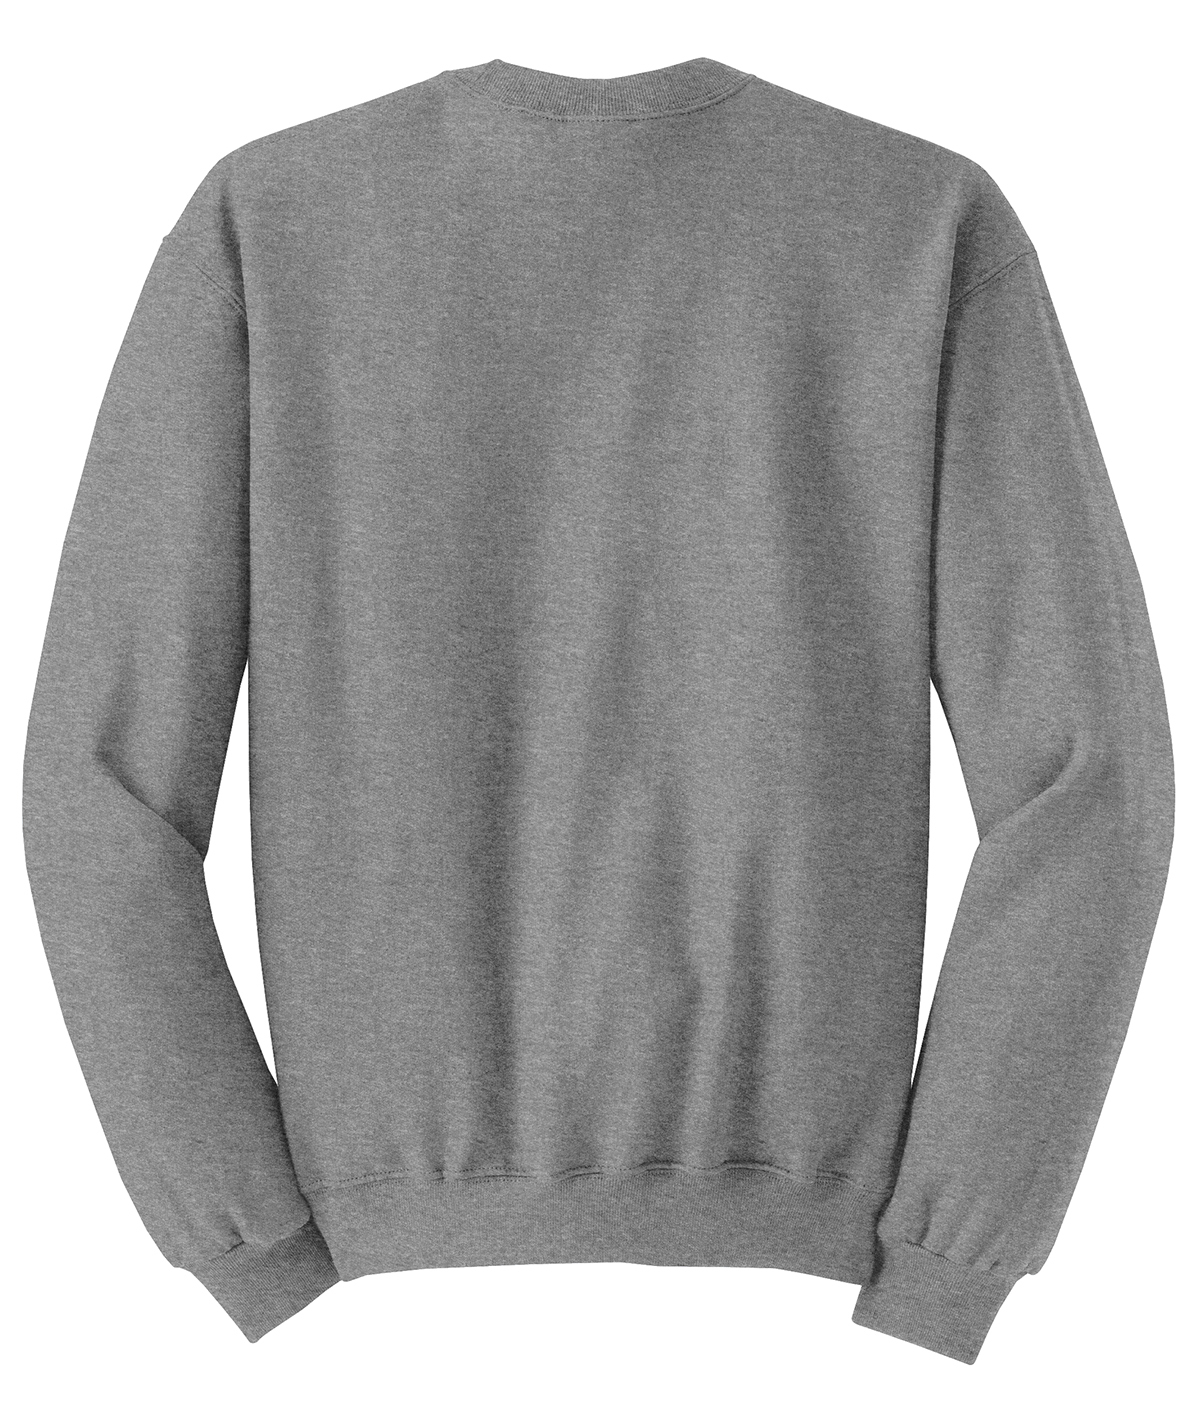 Jerzees Nublend Crewneck Sweatshirt Crewnecks Sweatshirts Fleece Sanmar [ 1406 x 1200 Pixel ]